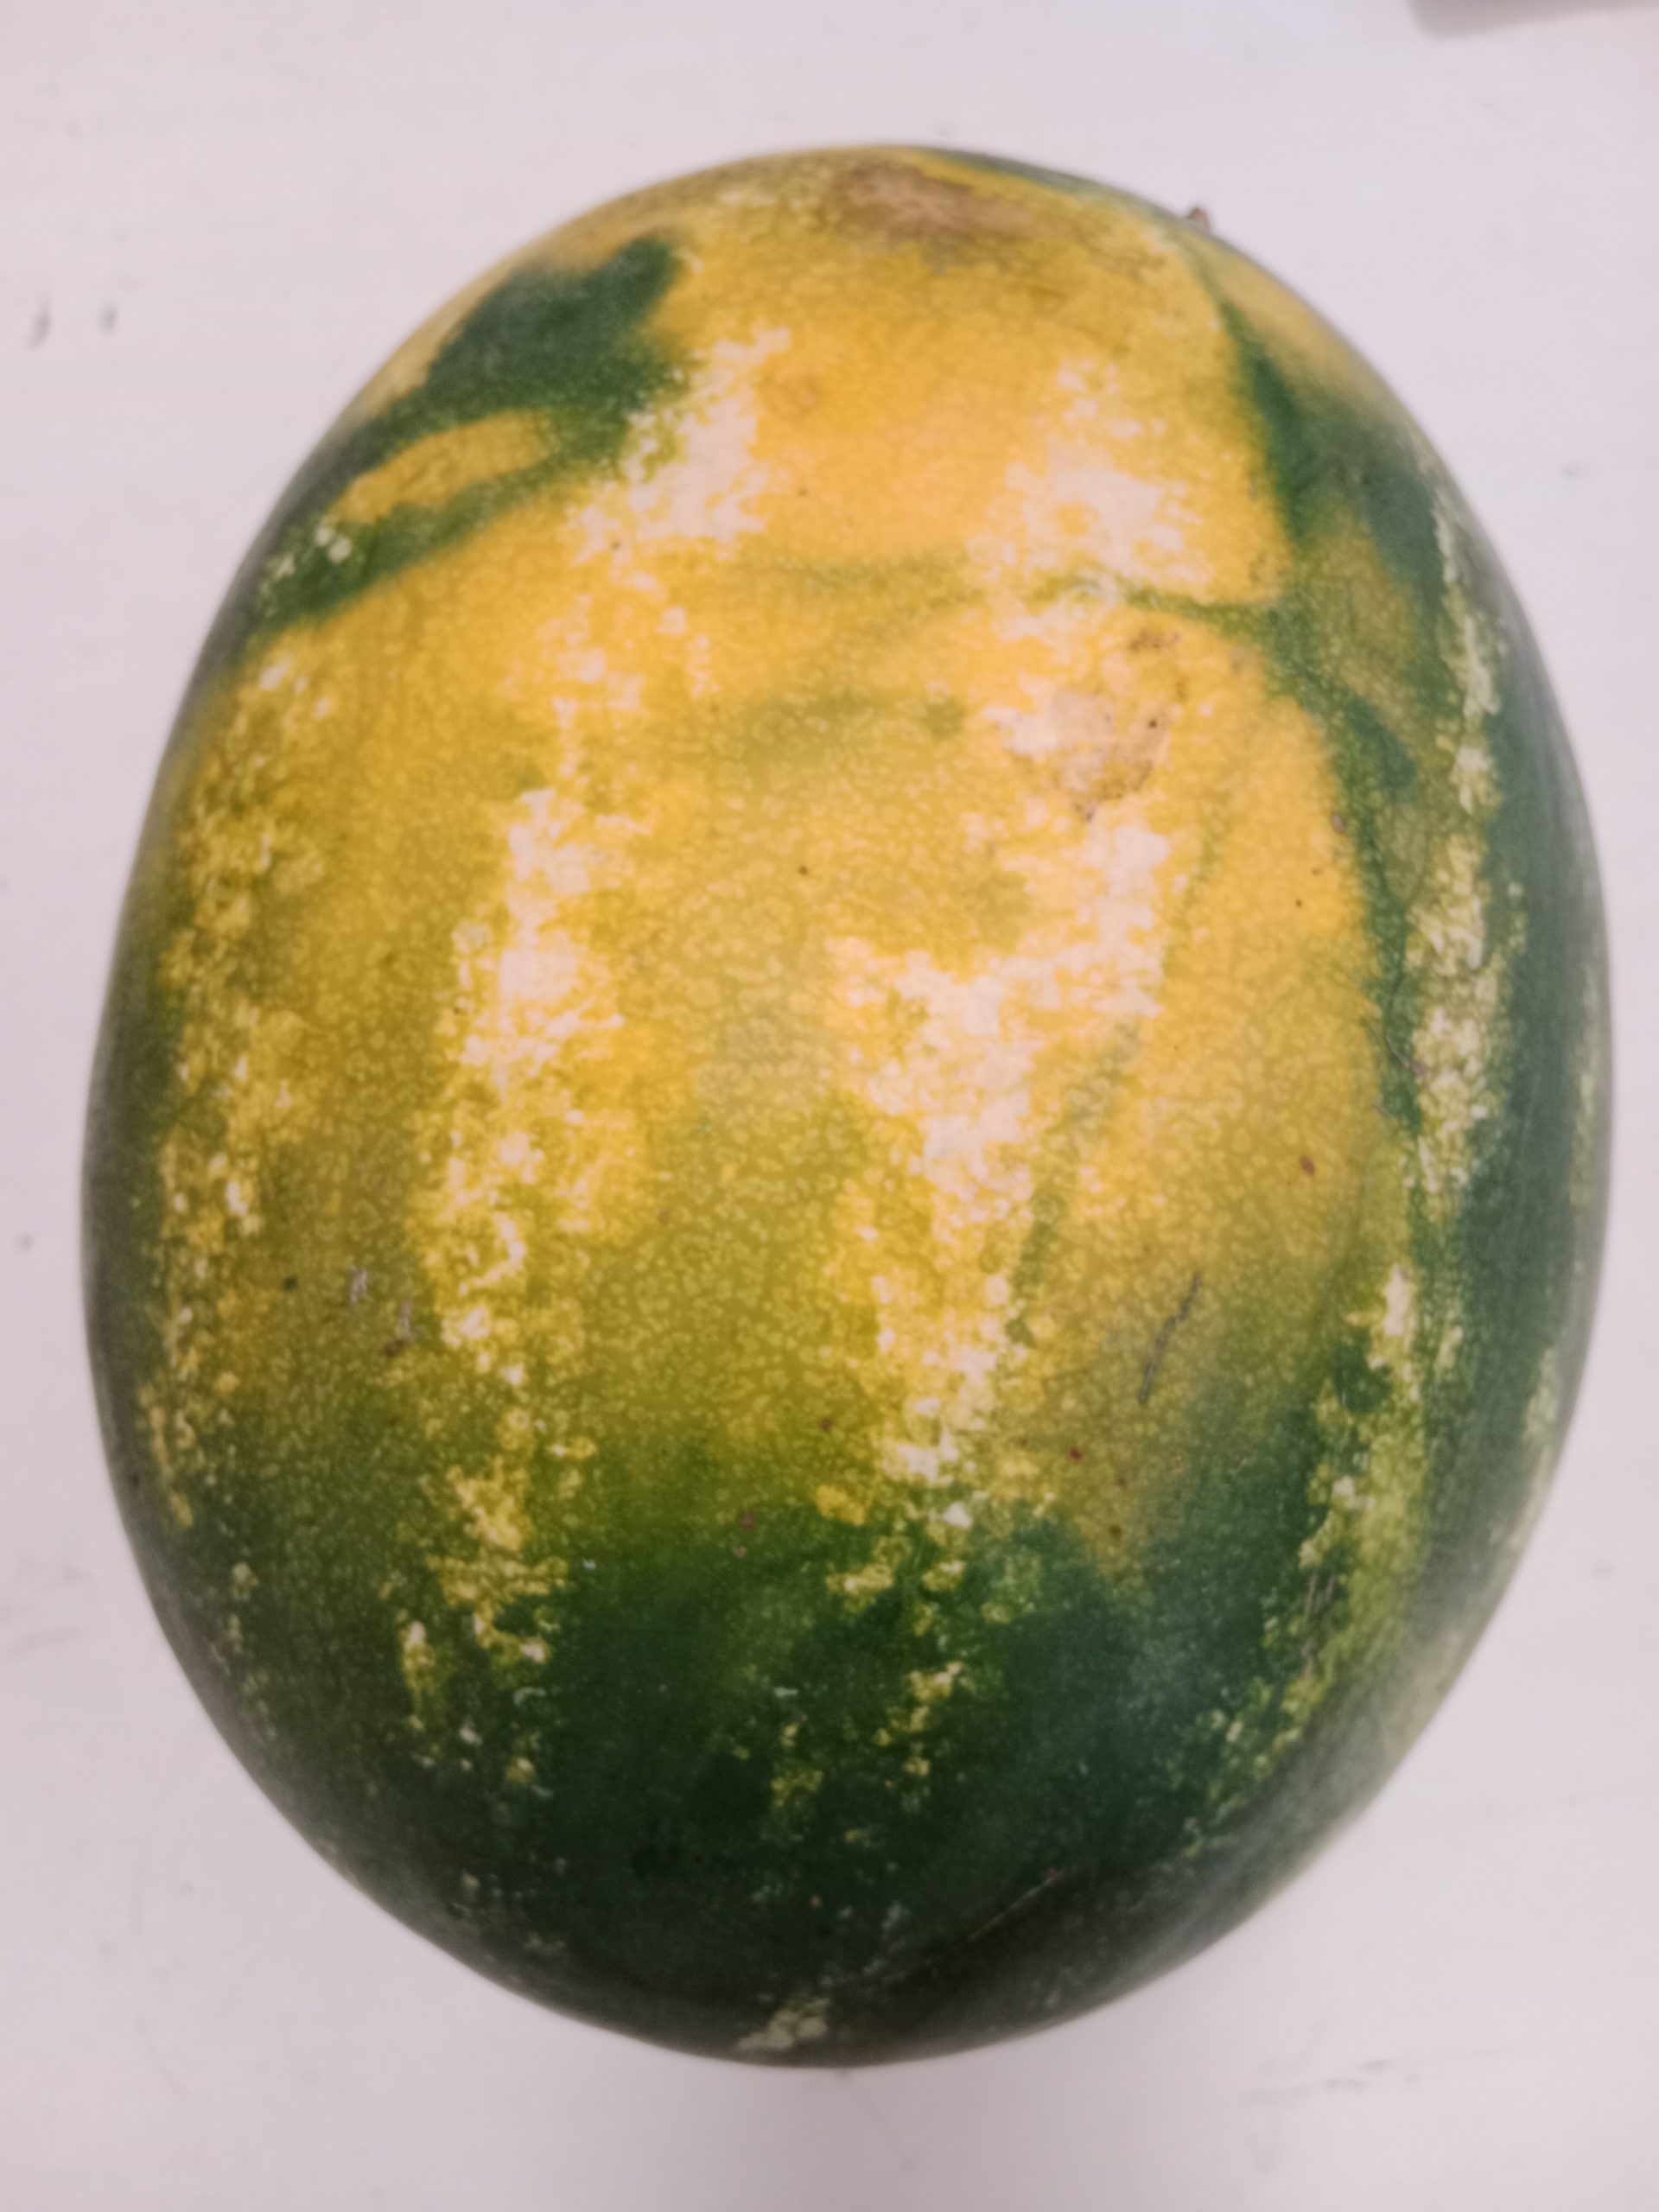 Der dunkelgelbe Fleck ist ein gutes Zeichen für eine reife Wassermelone.